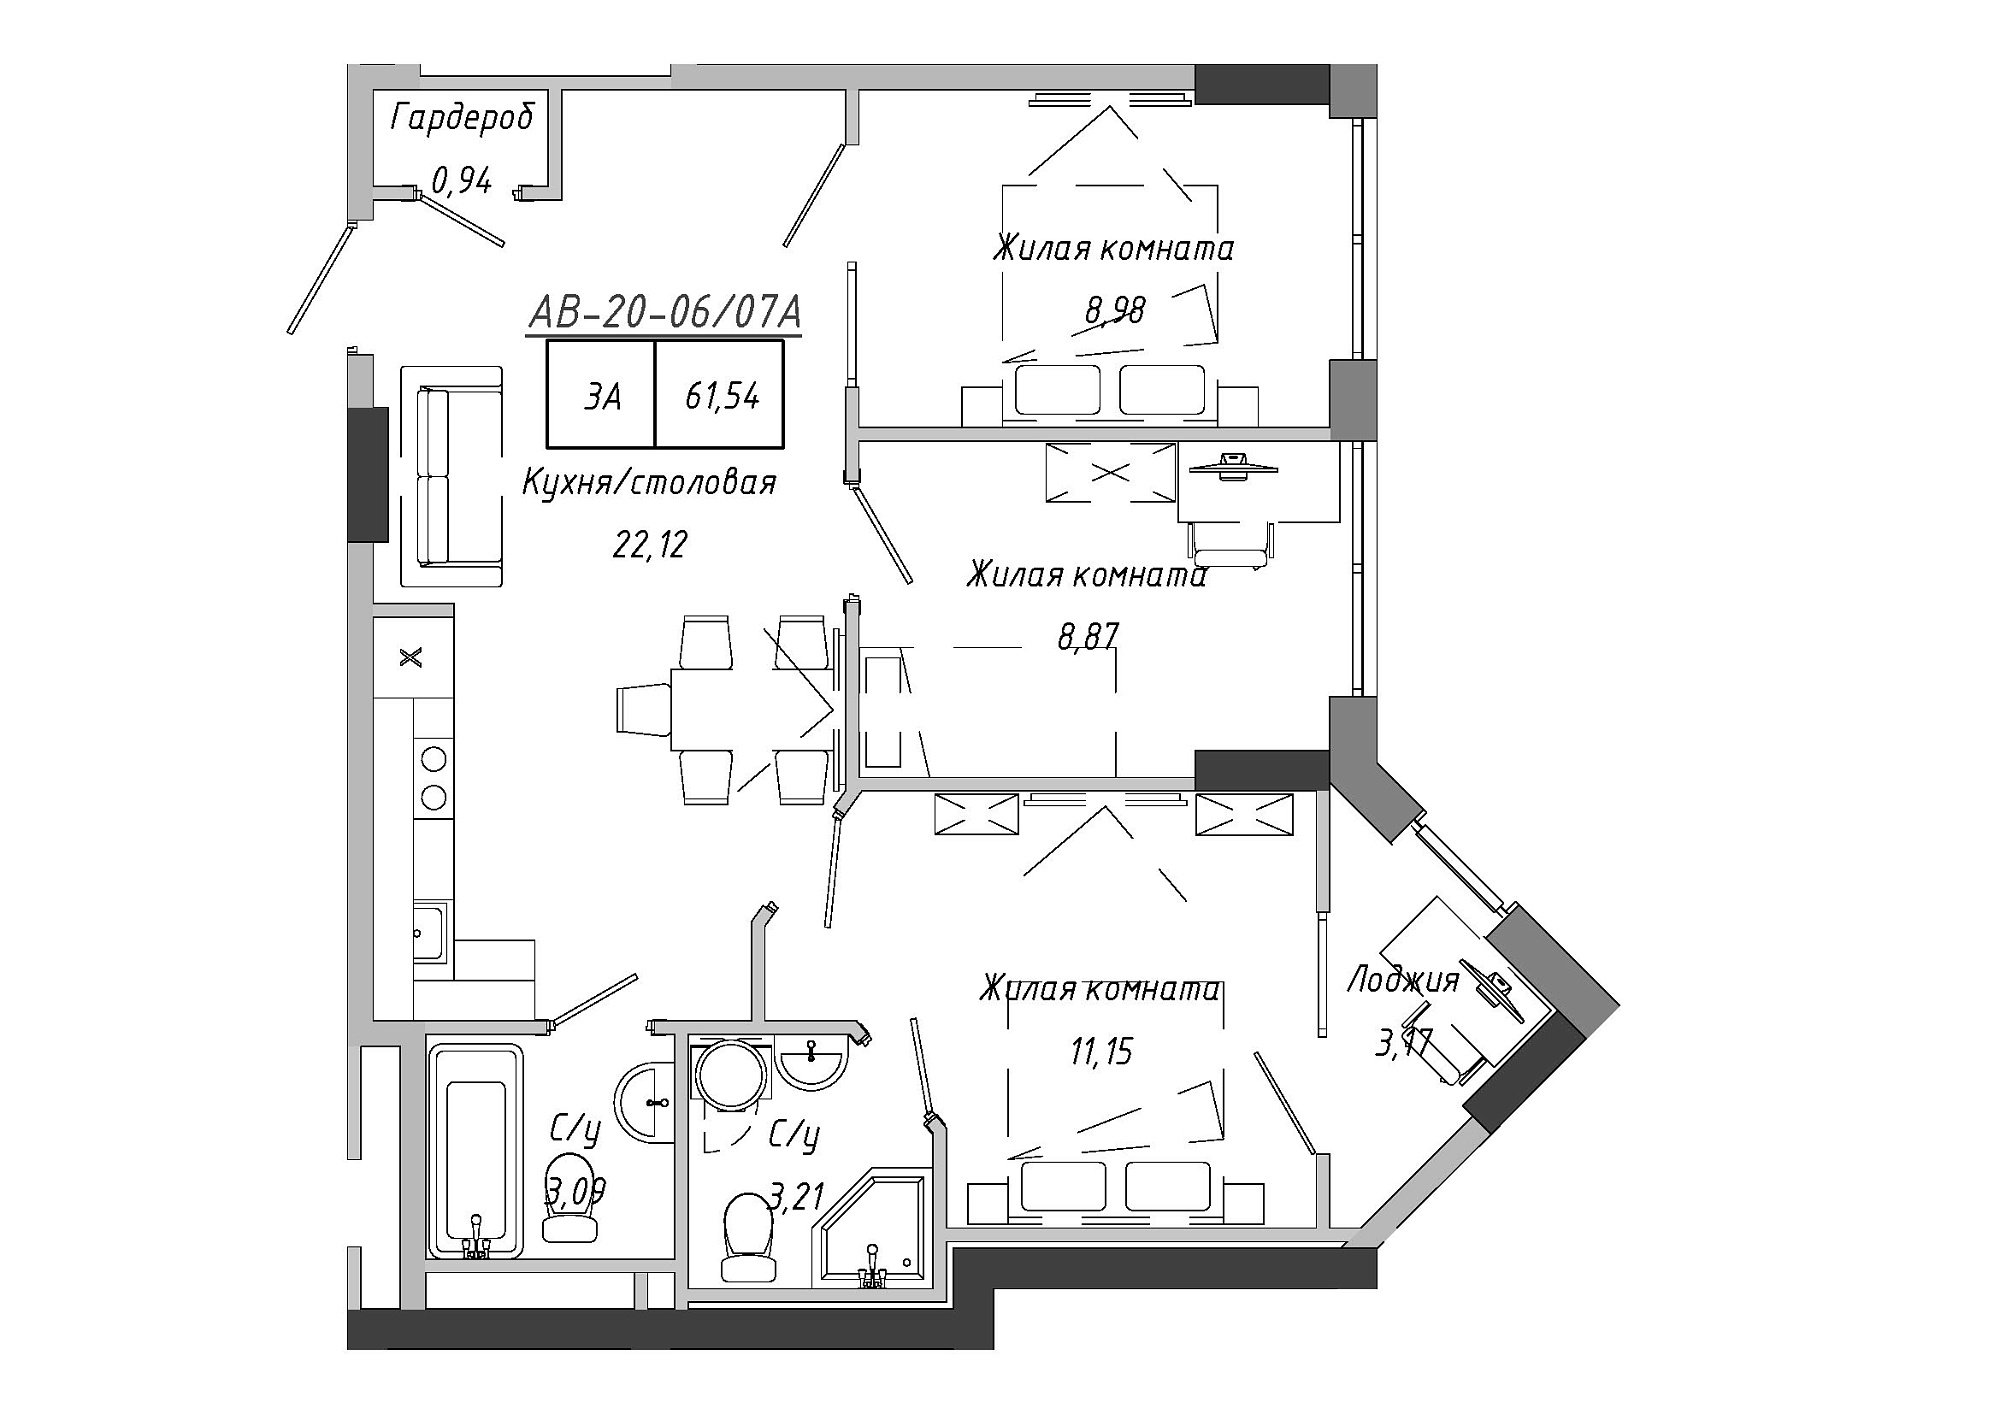 Планування 3-к квартира площею 62.67м2, AB-20-06/0007а.